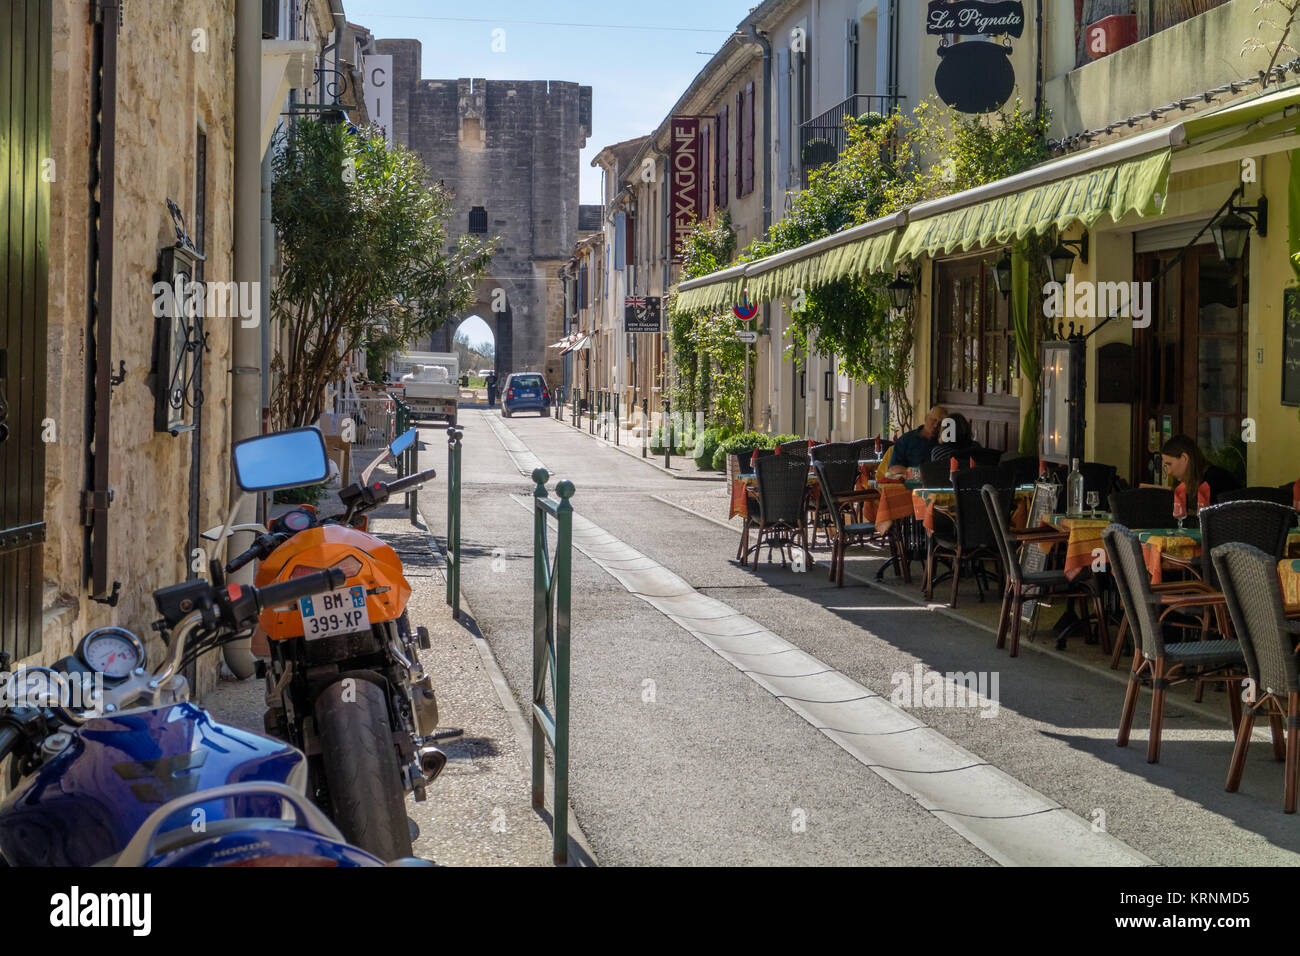 Sonnigen und ruhigen Straße in Aigues-Mortes mit Outdoor Cafe und Turm der Stadtmauer im Hintergrund. Aigues-Mortes, Frankreich. 2017. Stockfoto